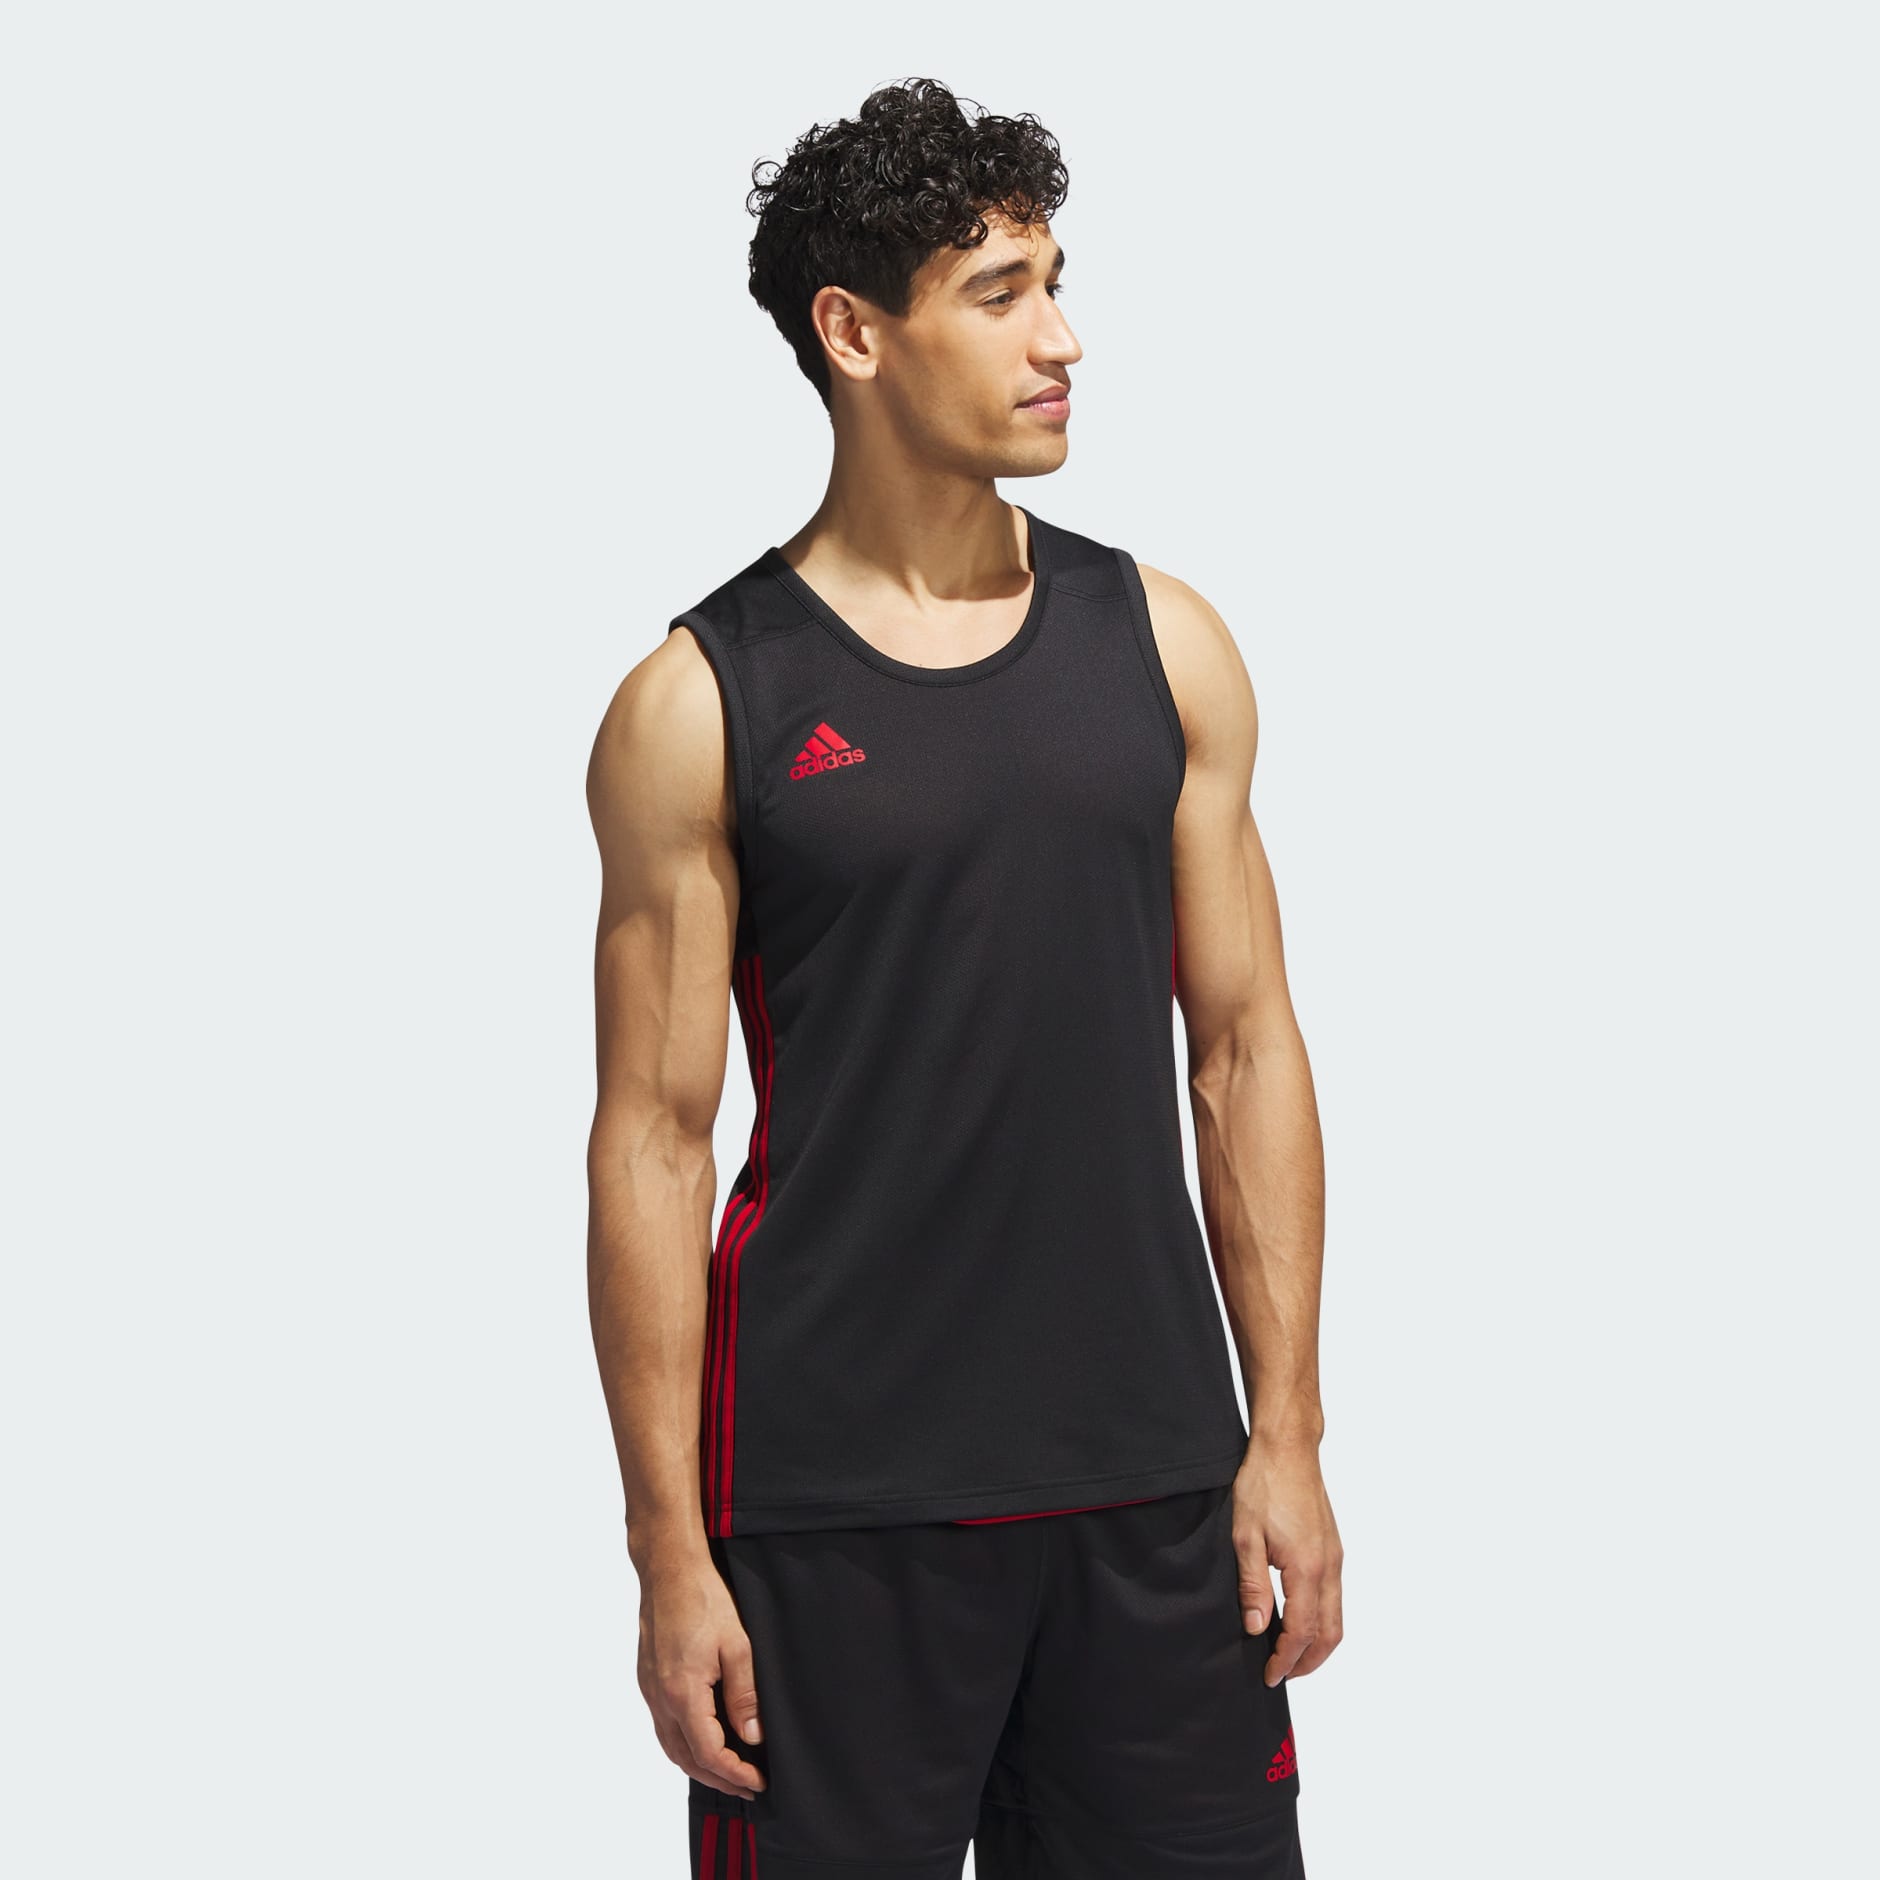 Men's Clothing - 3G Speed Reversible Jersey | adidas